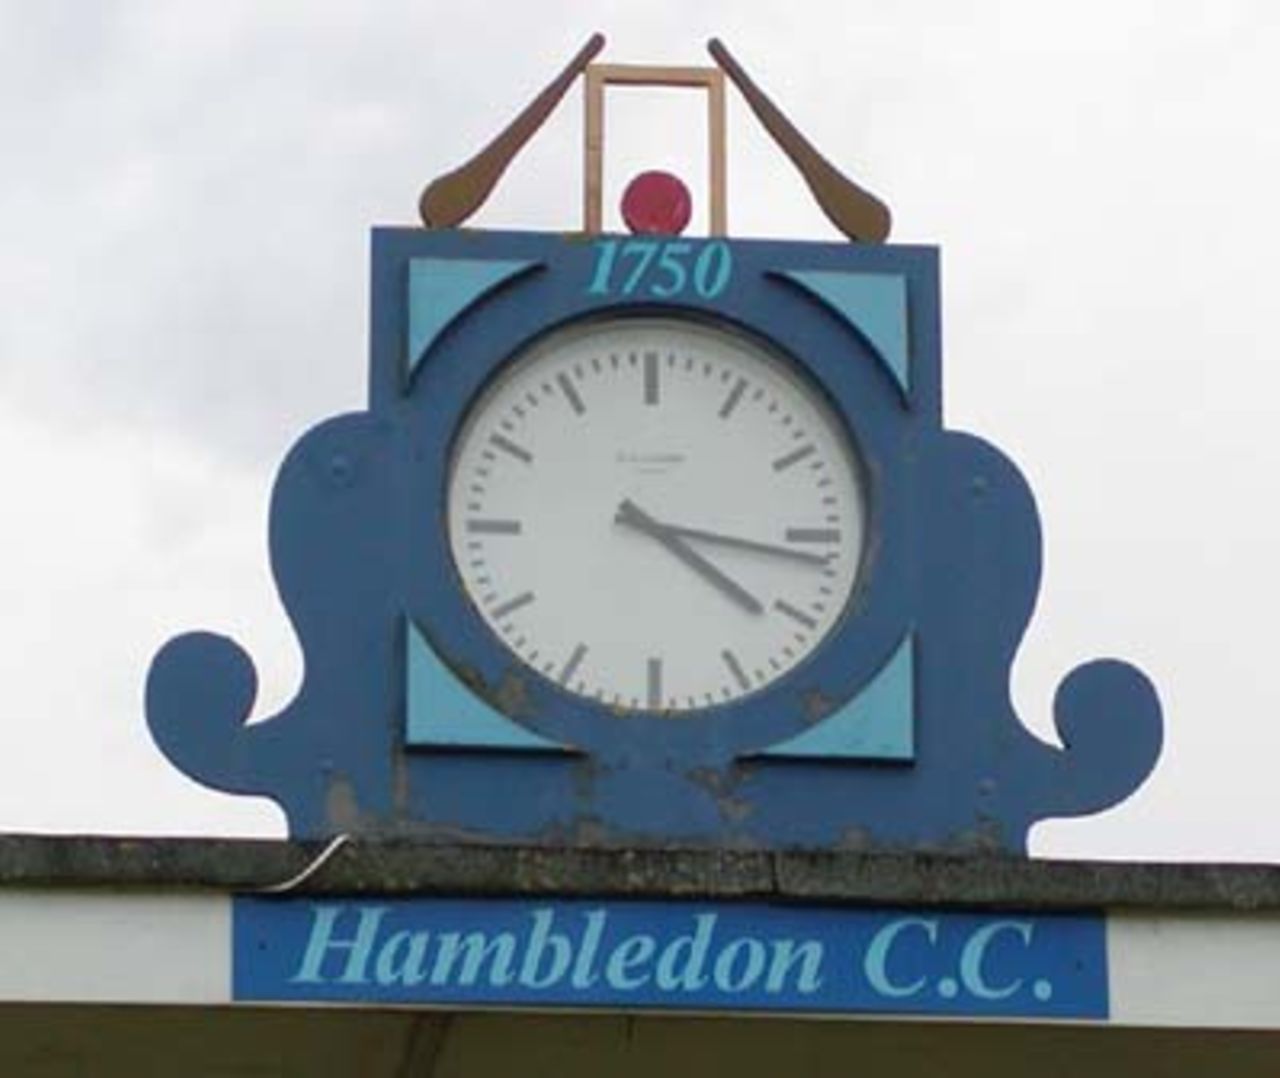 Ancient clock at Hambledon Cricket Club